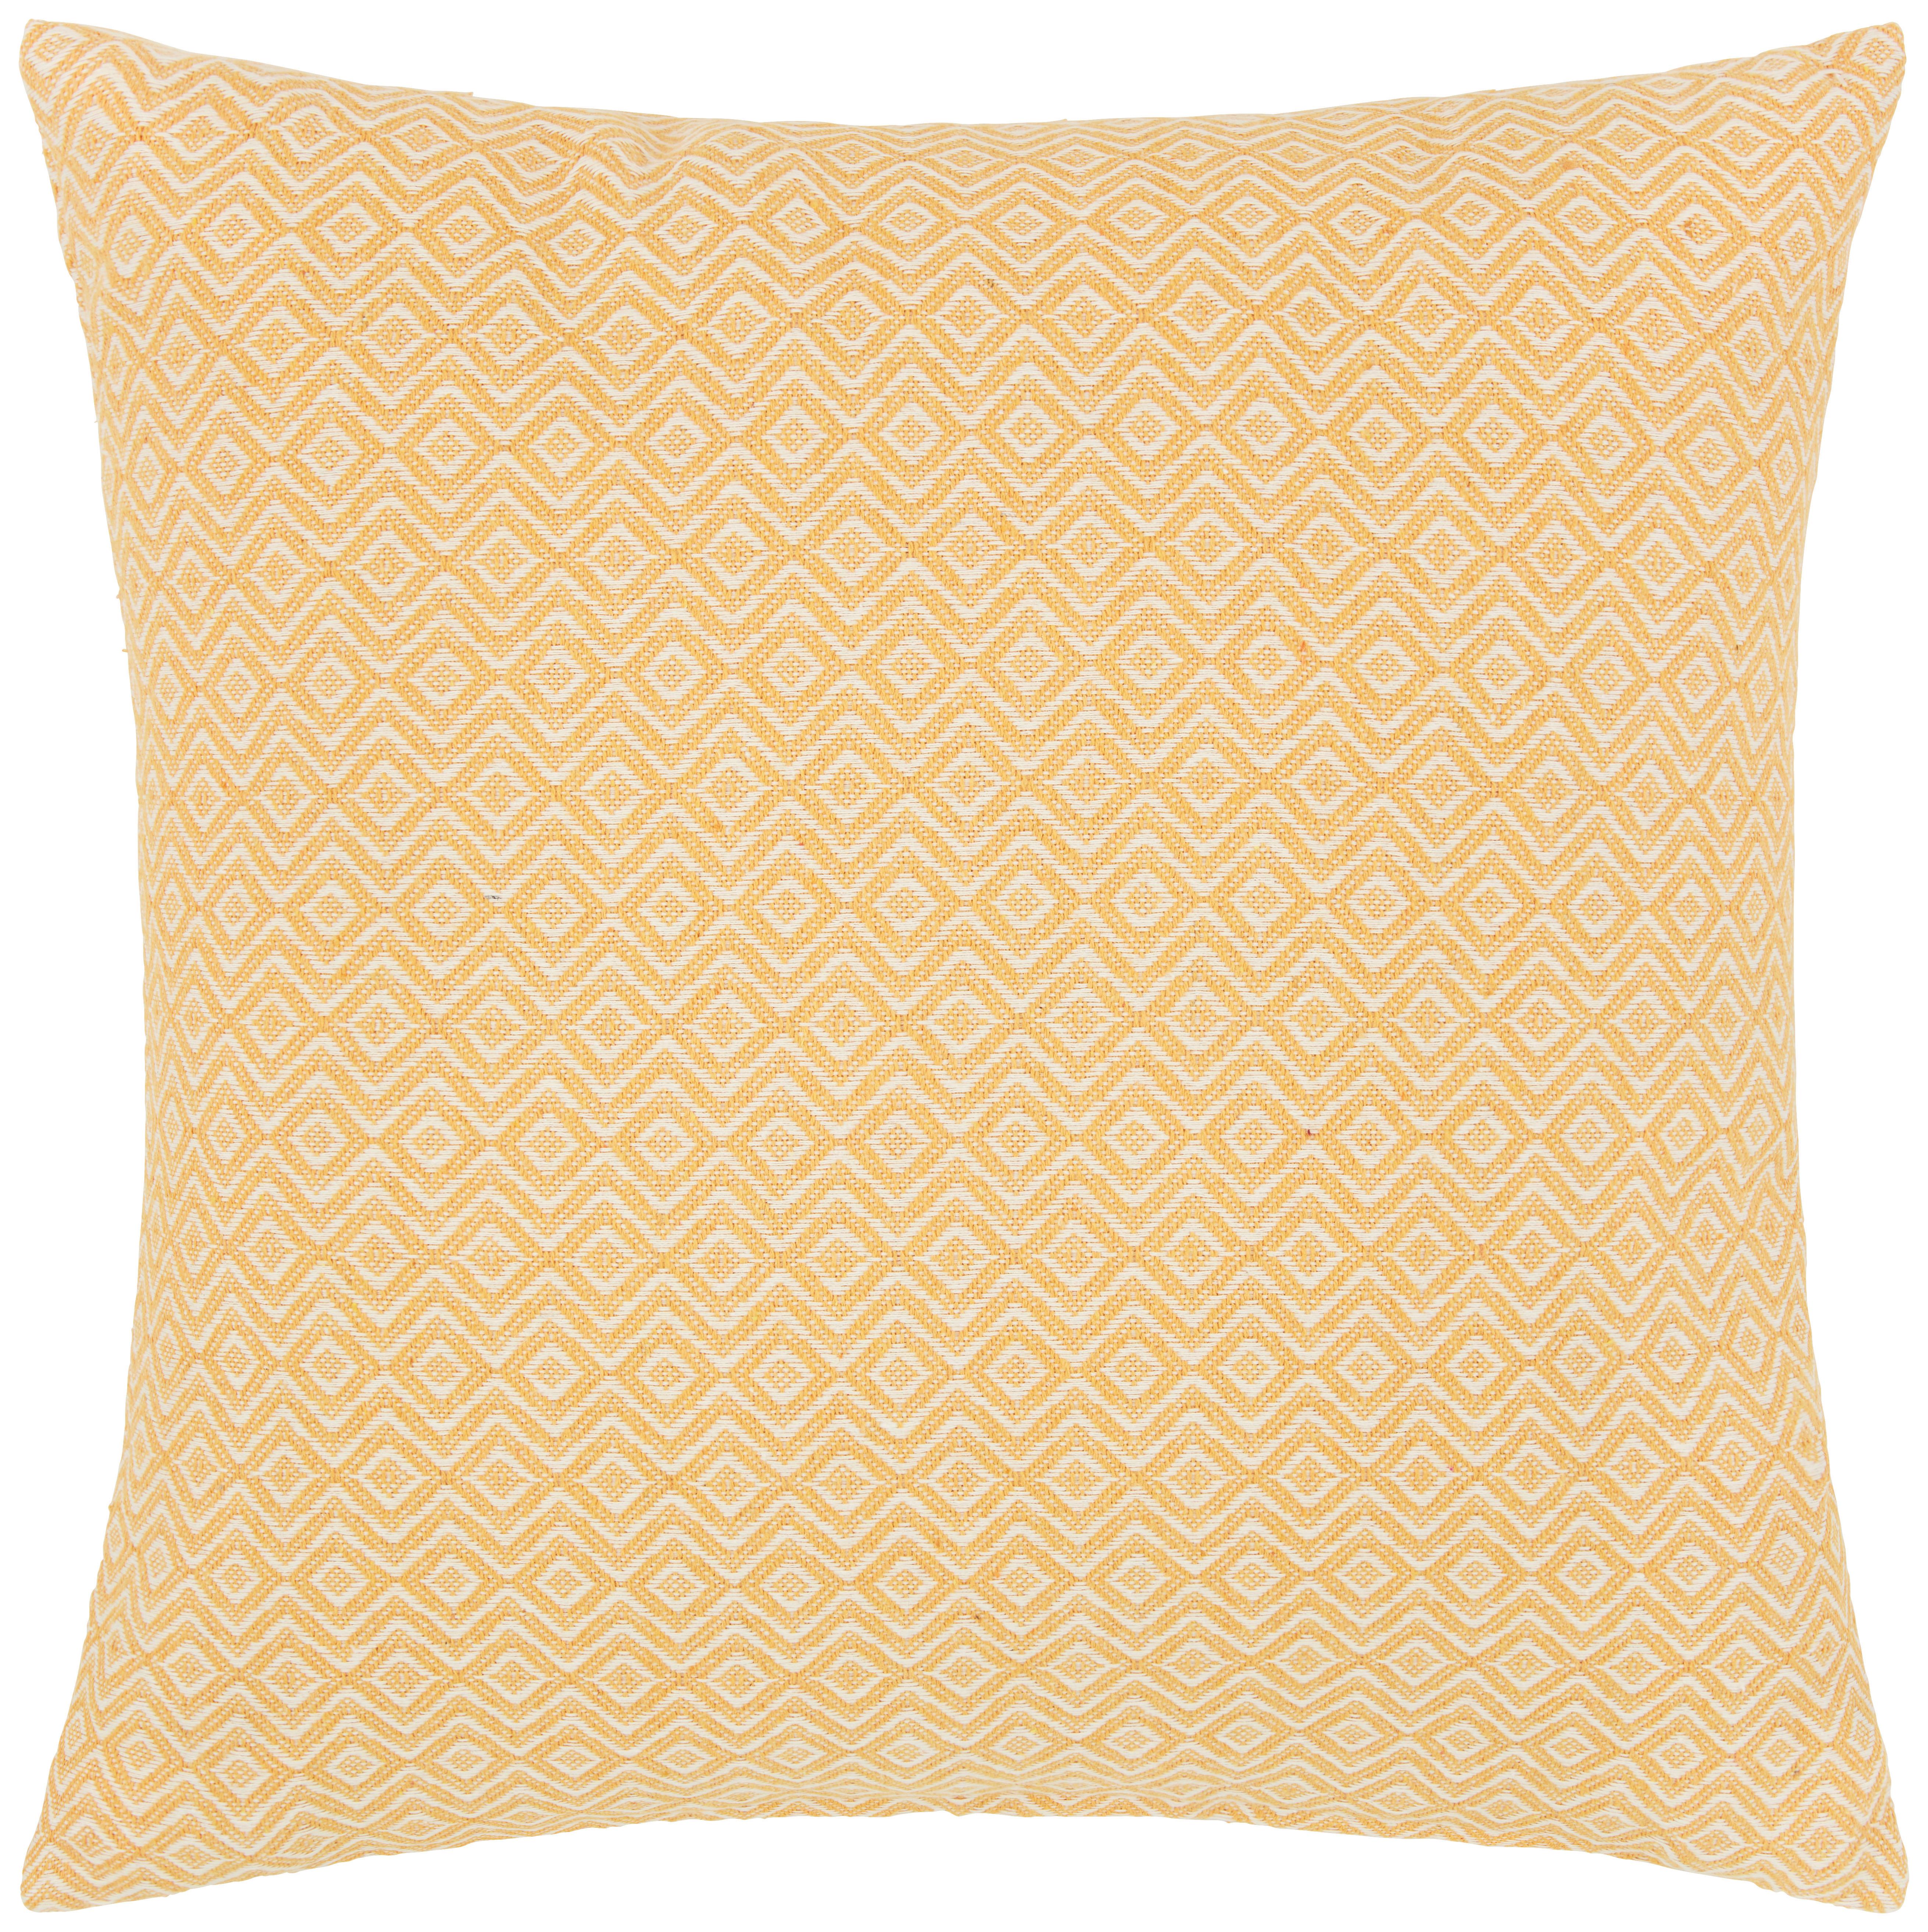 Zierkissen Dobby Raute in Gelb/Weiß ca. 45x45cm - Weiss/Gelb, Textil (45/45cm) - Premium Living